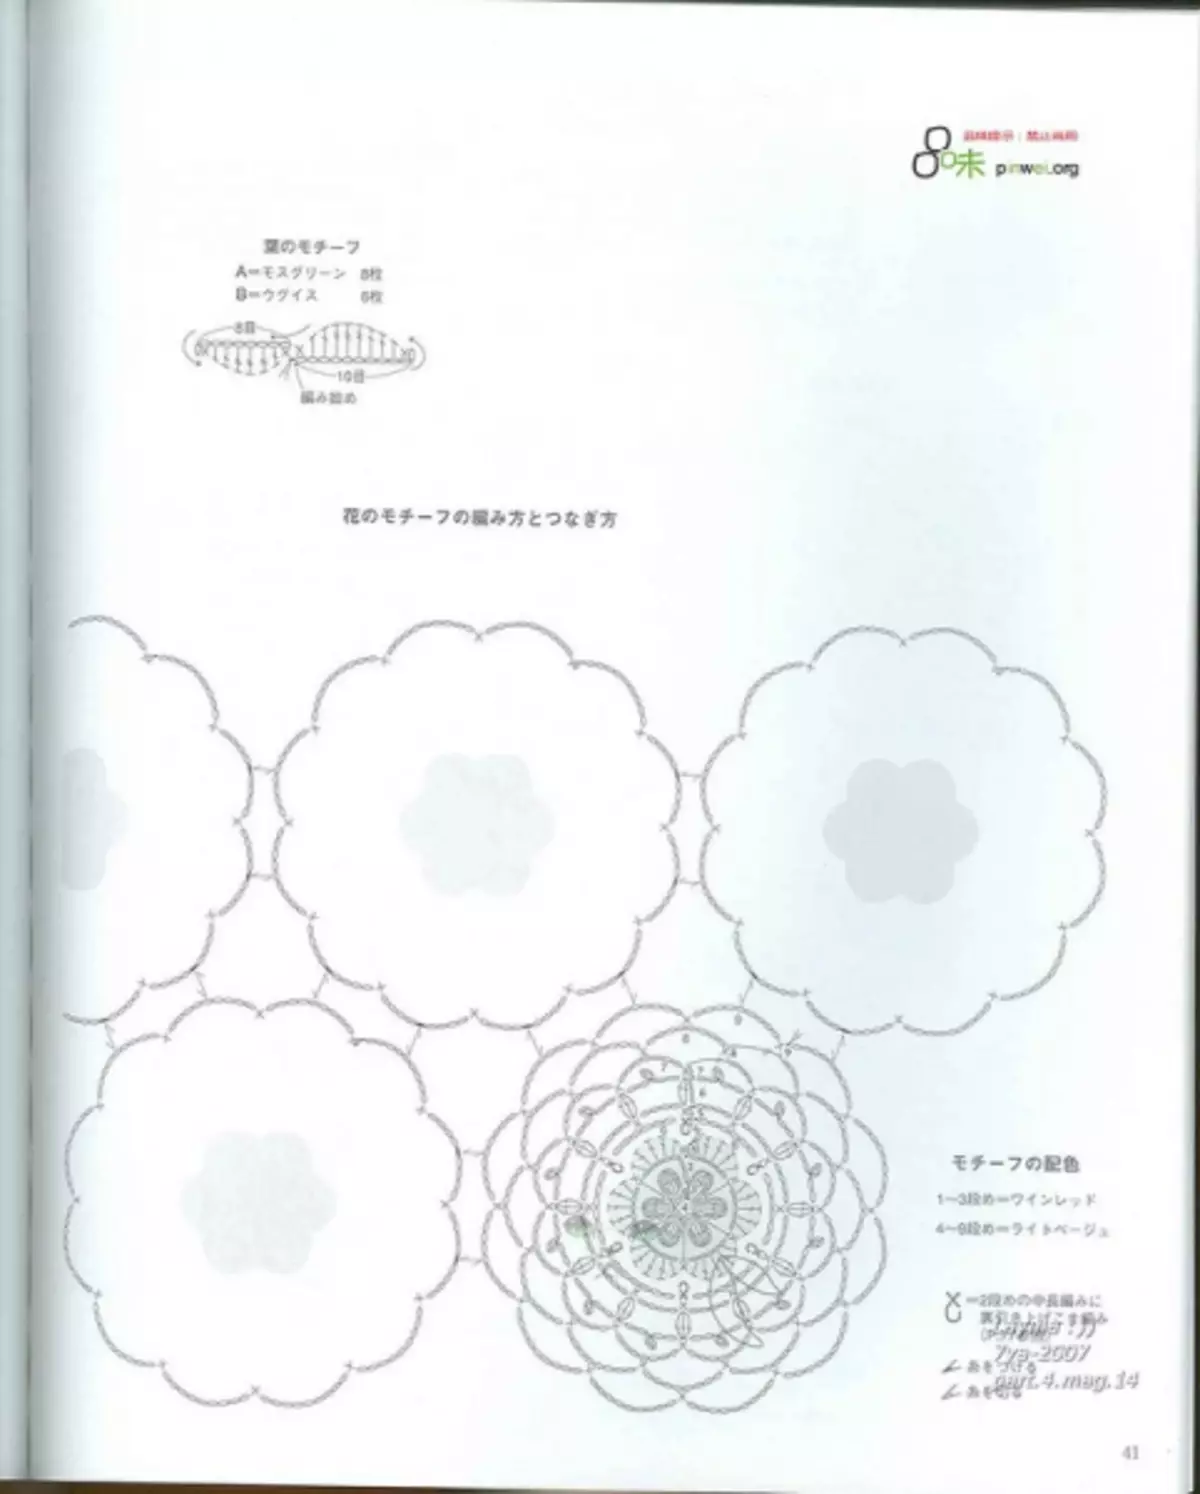 Կռունկ: Japanese ապոնական ամսագիր